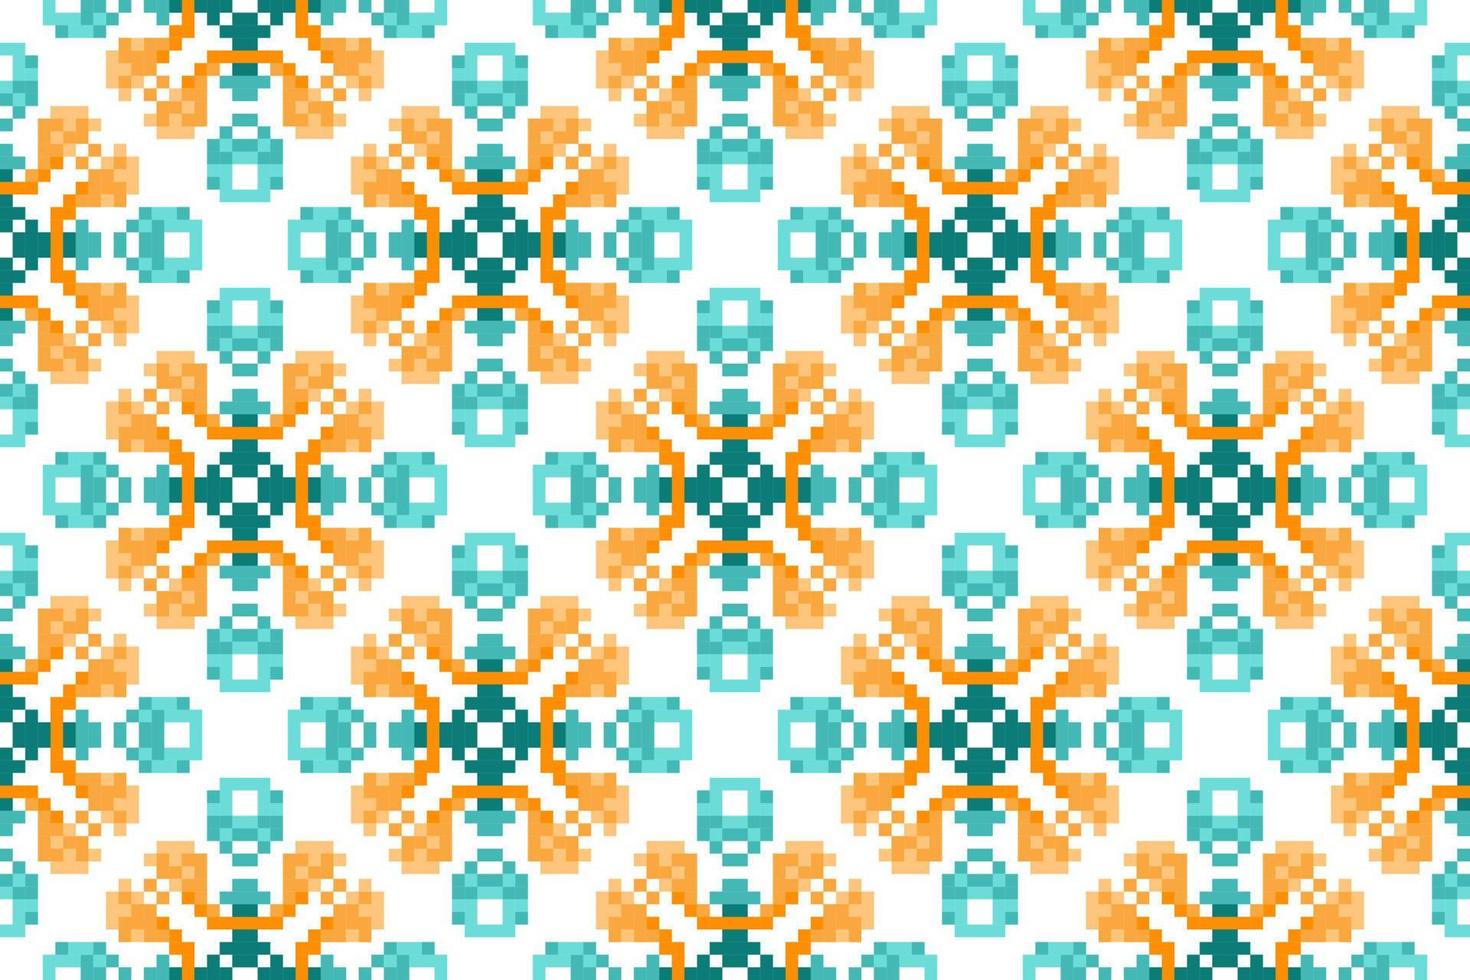 ikat ethnisches nahtloses musterdekorationsdesign. aztekischer stoffteppich boho mandalas textildekor tapete. Stammes- einheimisches Motiv verziert traditionelle Stickereivektorhintergrund-Pixelart vektor